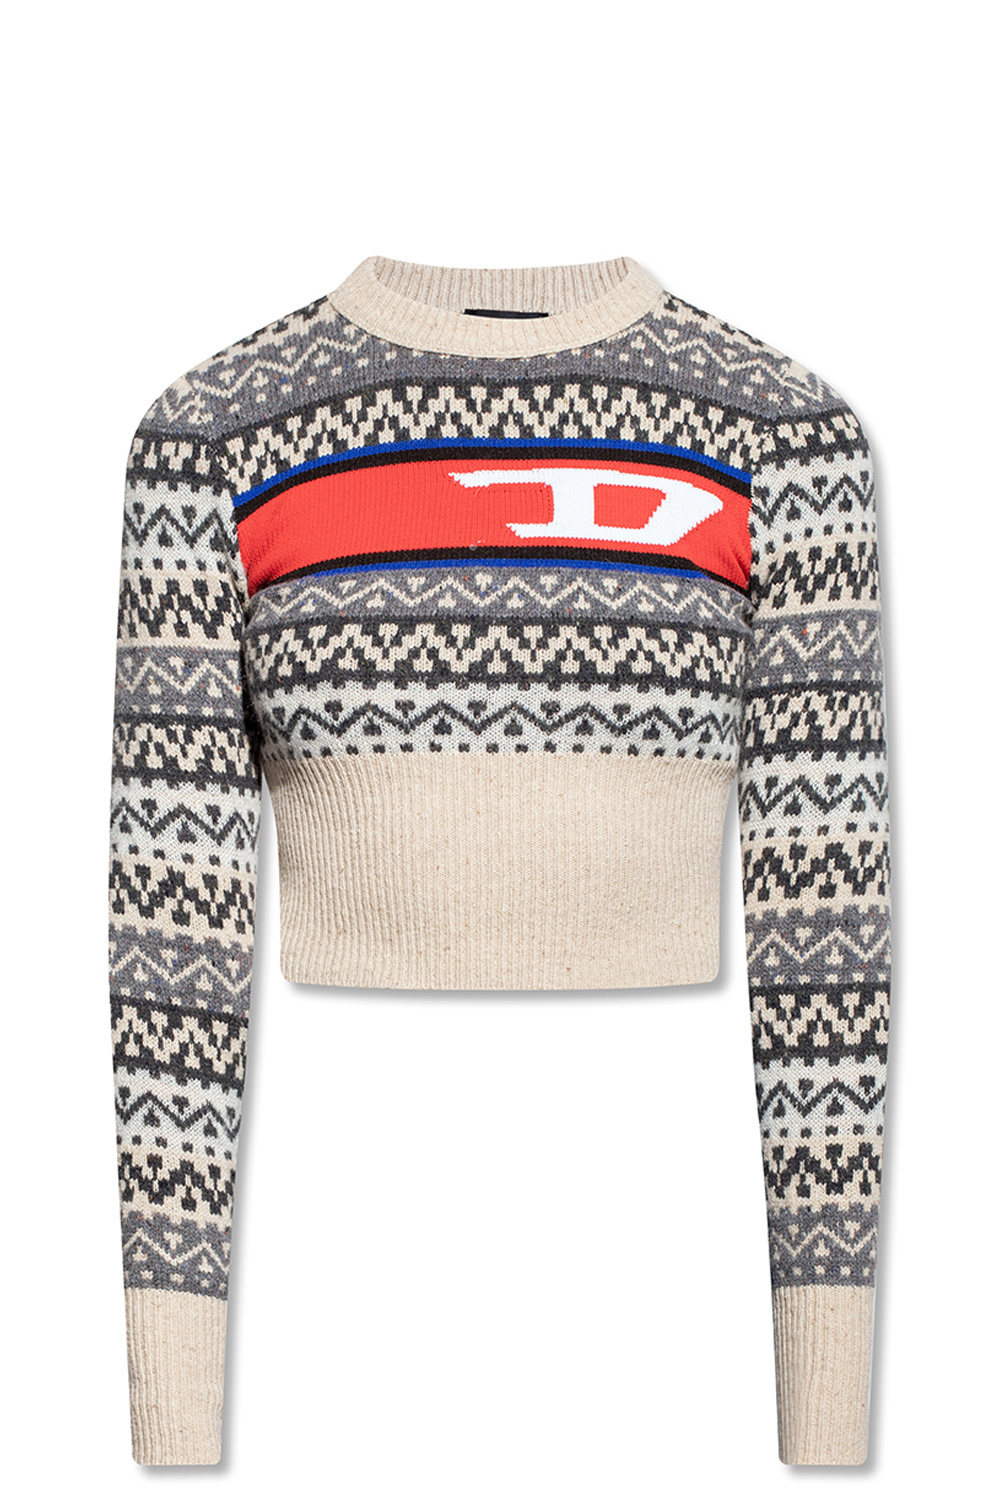 Diesel ‘M-Pasadena’ patterned sweater